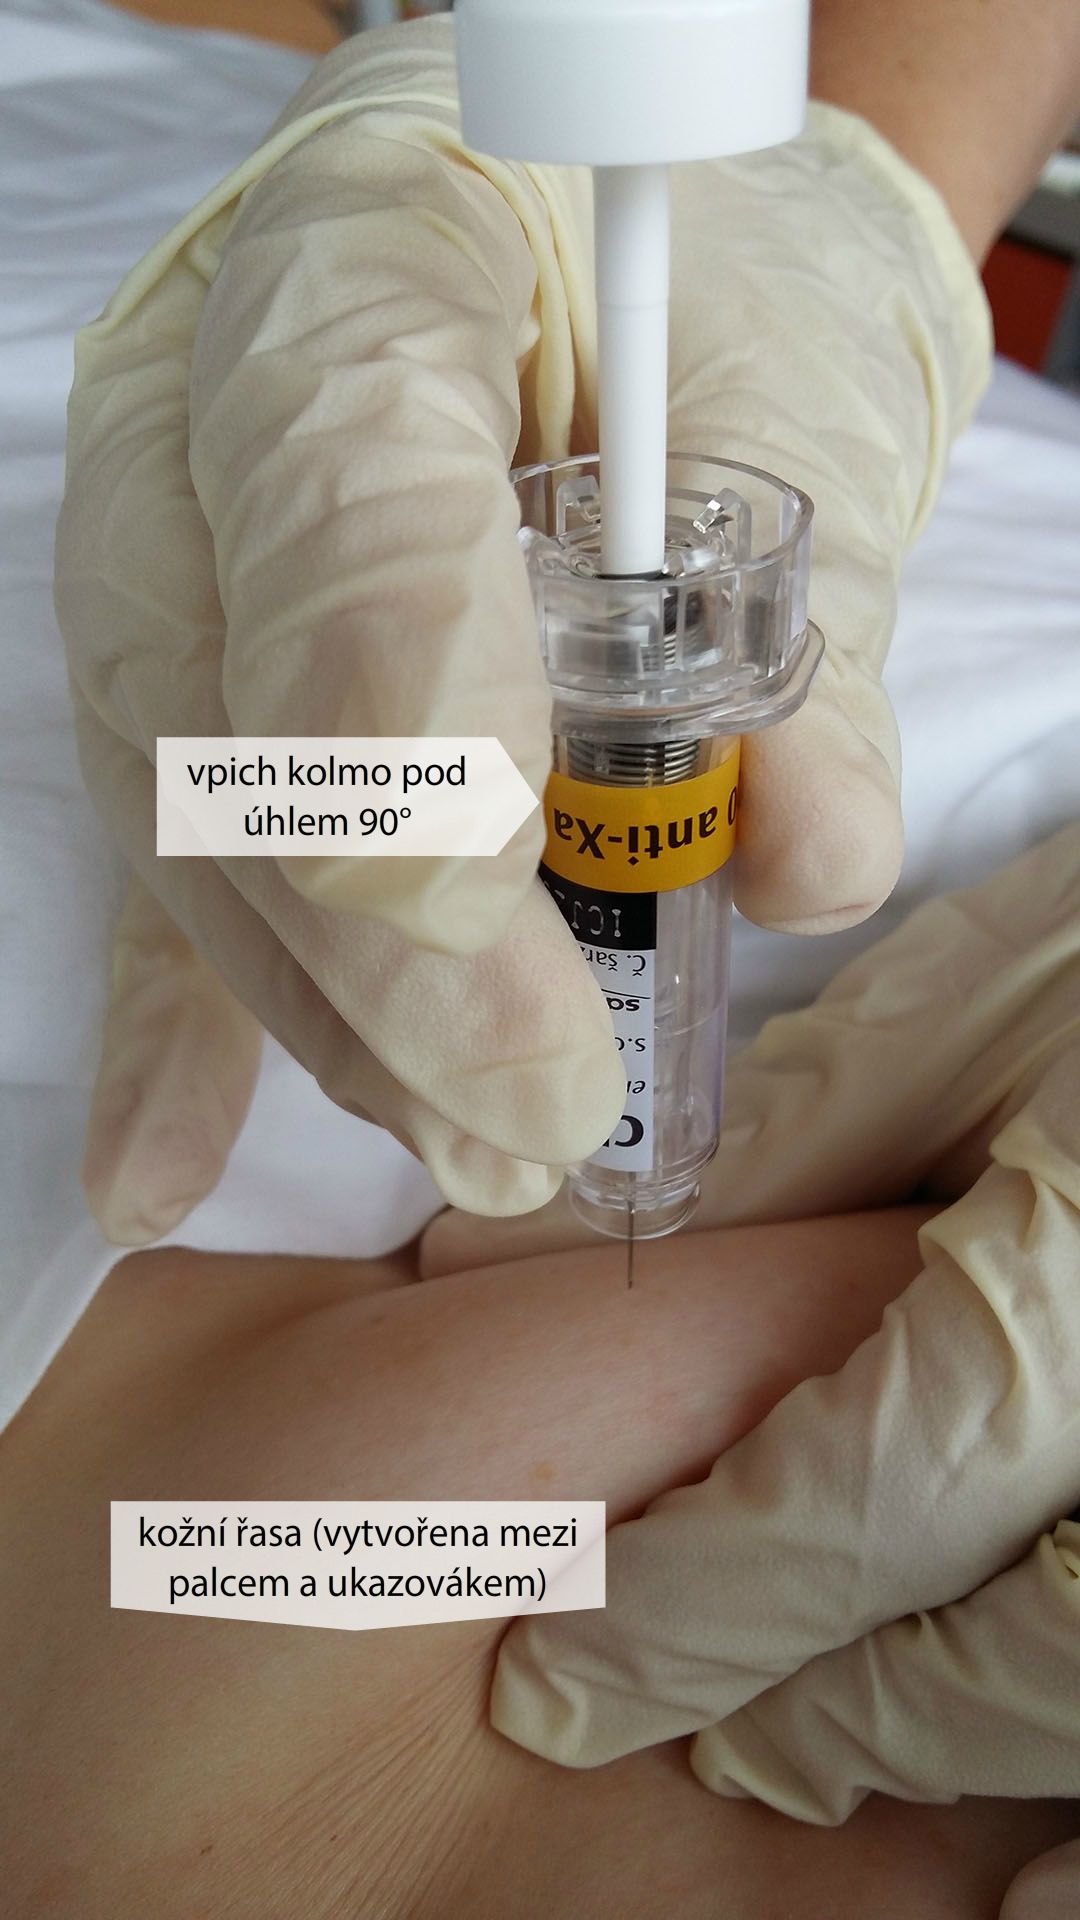 Aplikace s.c. injekce do břicha – nízkomolekulární heparin